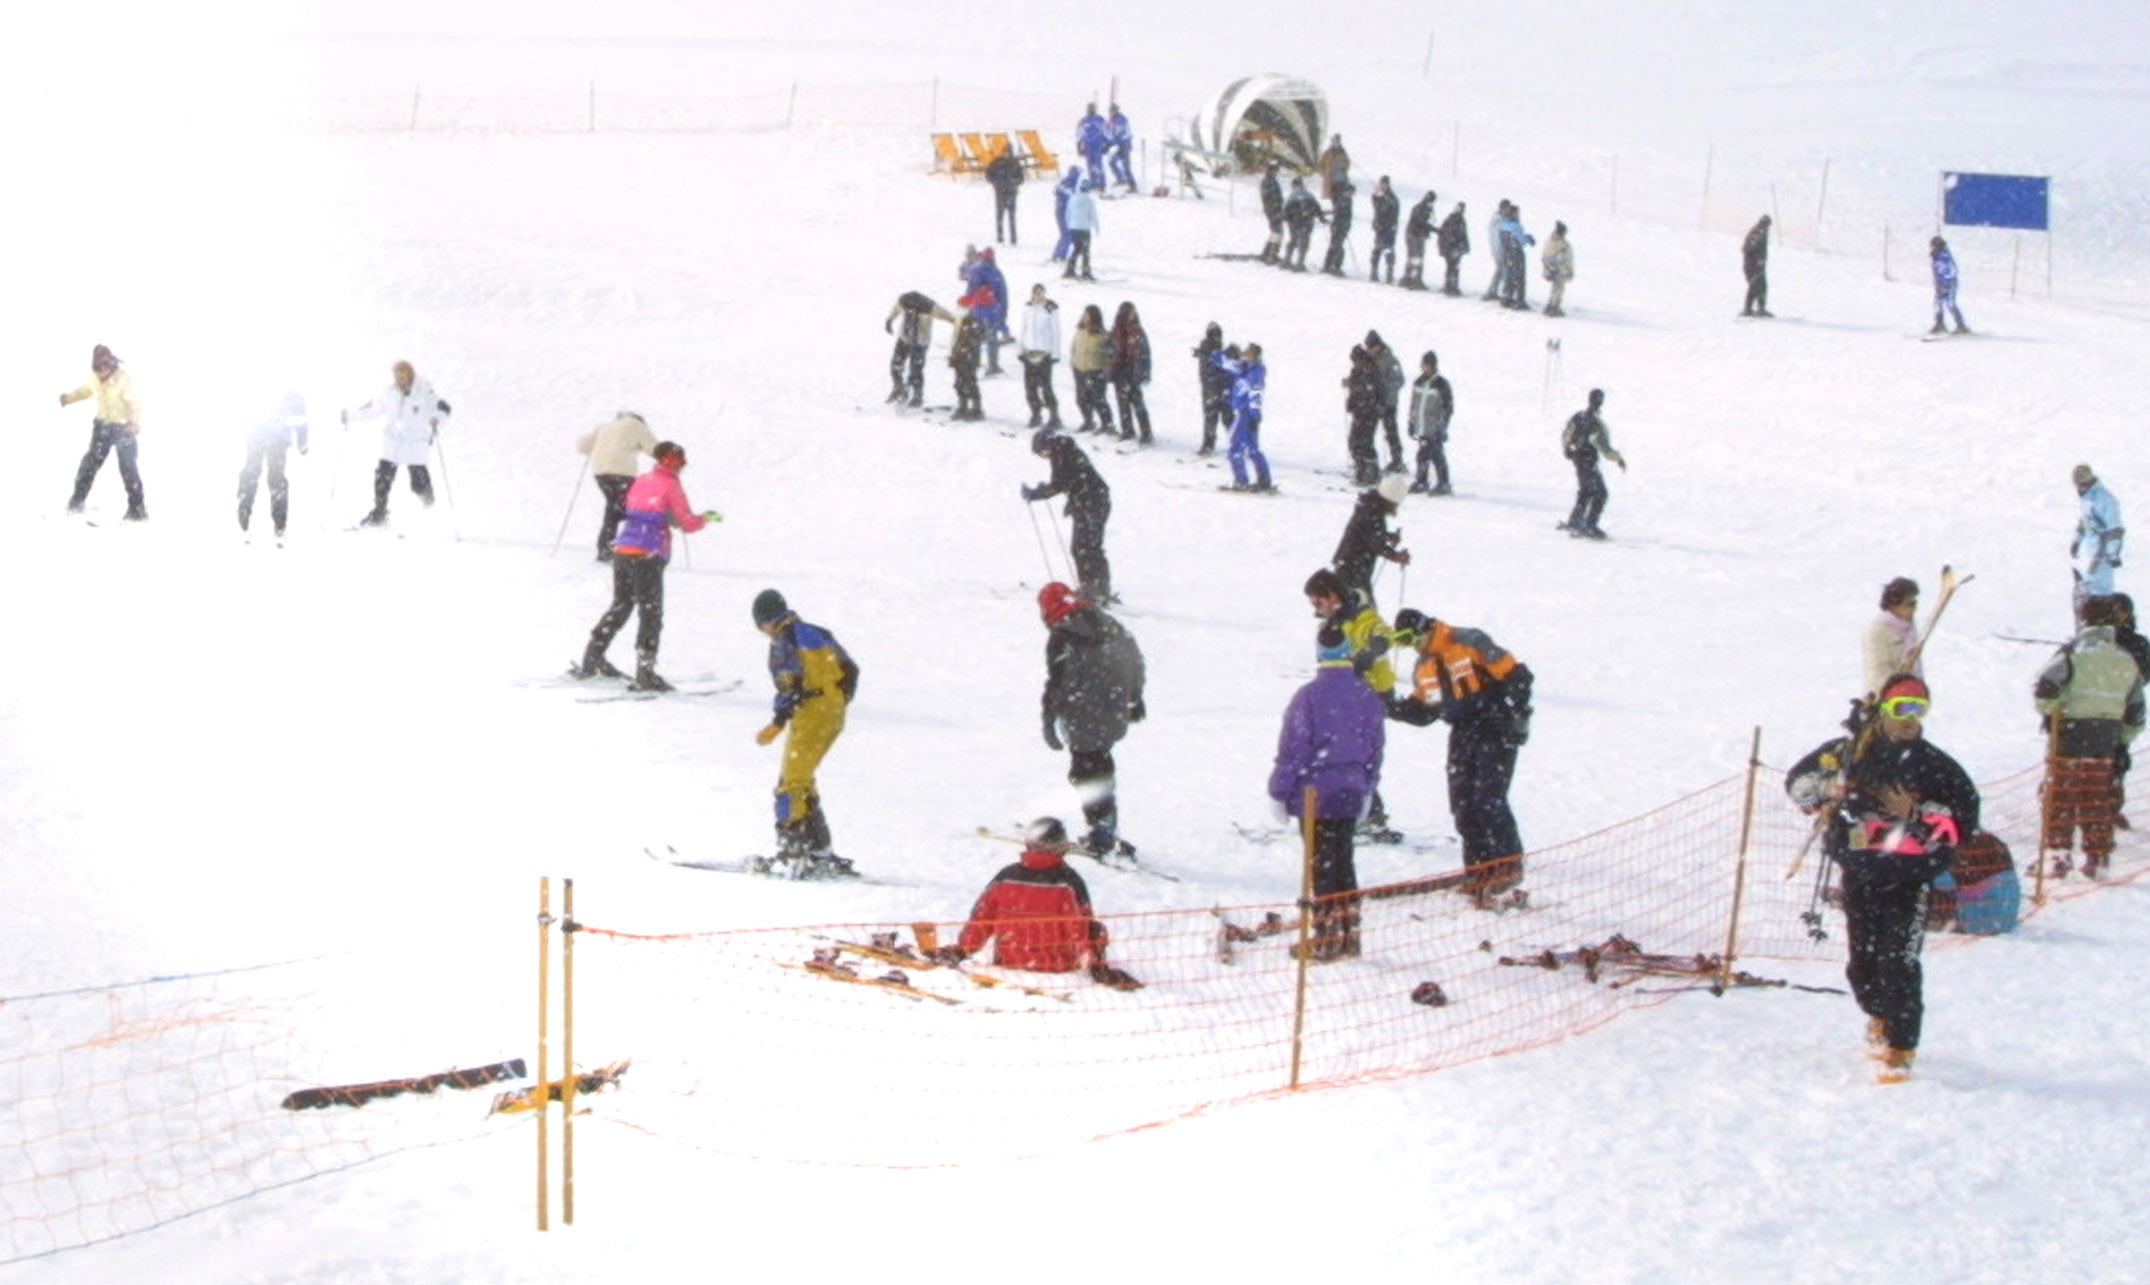 Κάντε σκι και σνόουμπορντ στα ελληνικά χιονοδρoμικά κέντρα από 10 ευρώ!